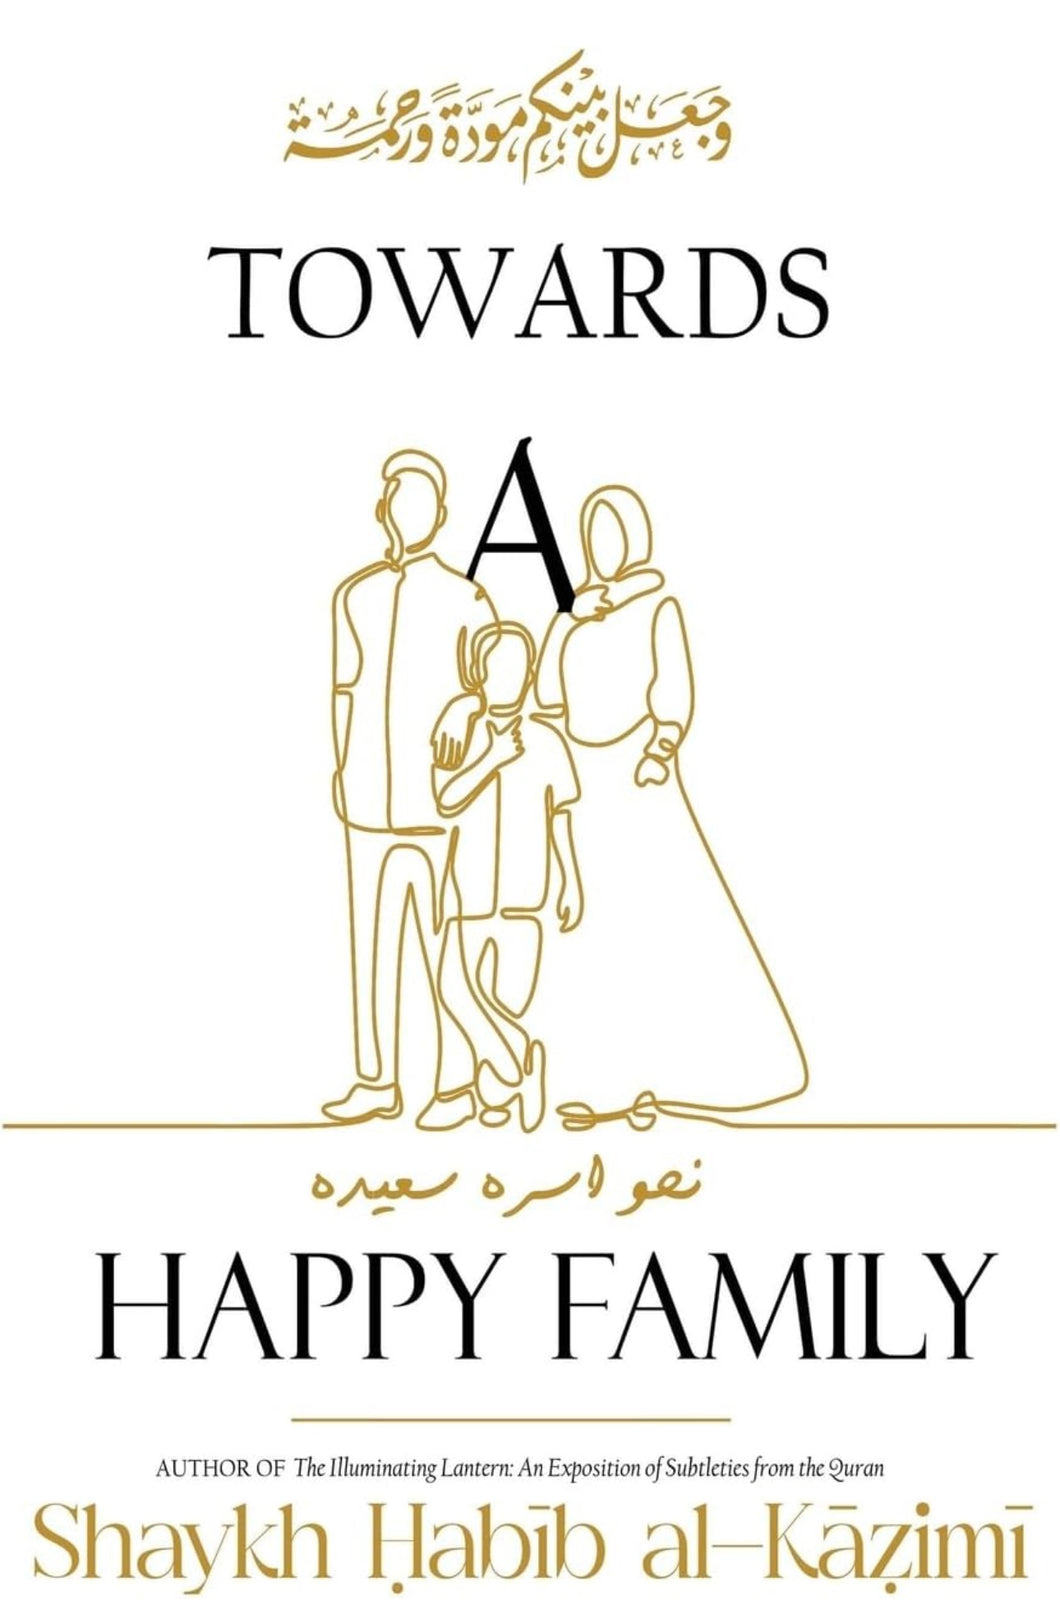 Towards a Happy Family